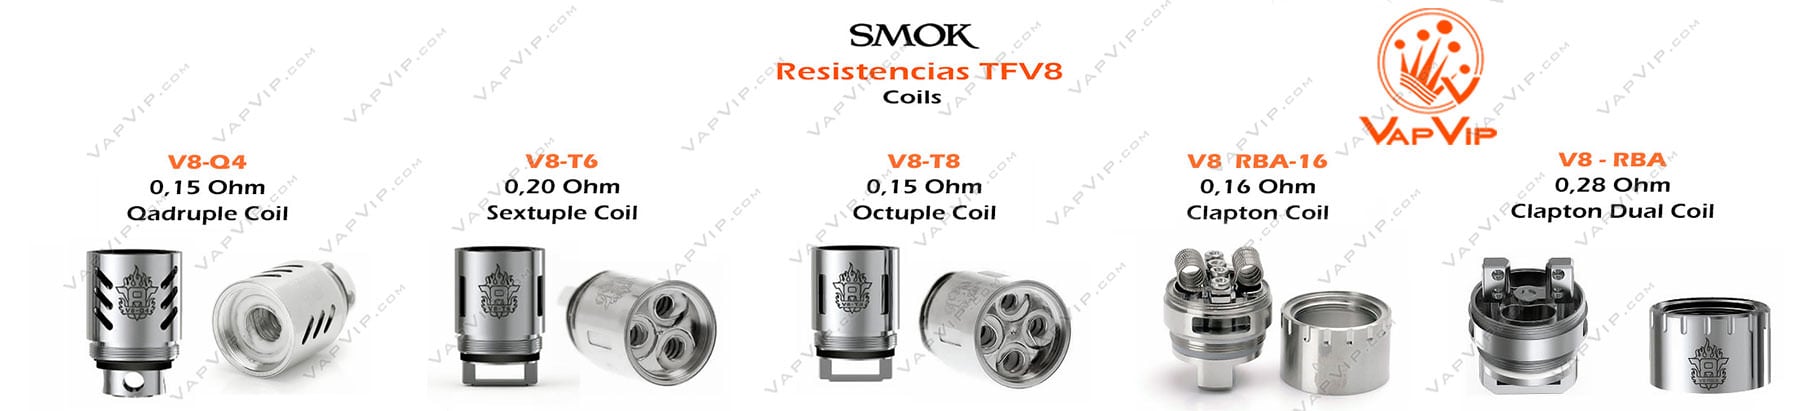 TFV8 6ml Atomizador by Smok comprar en España